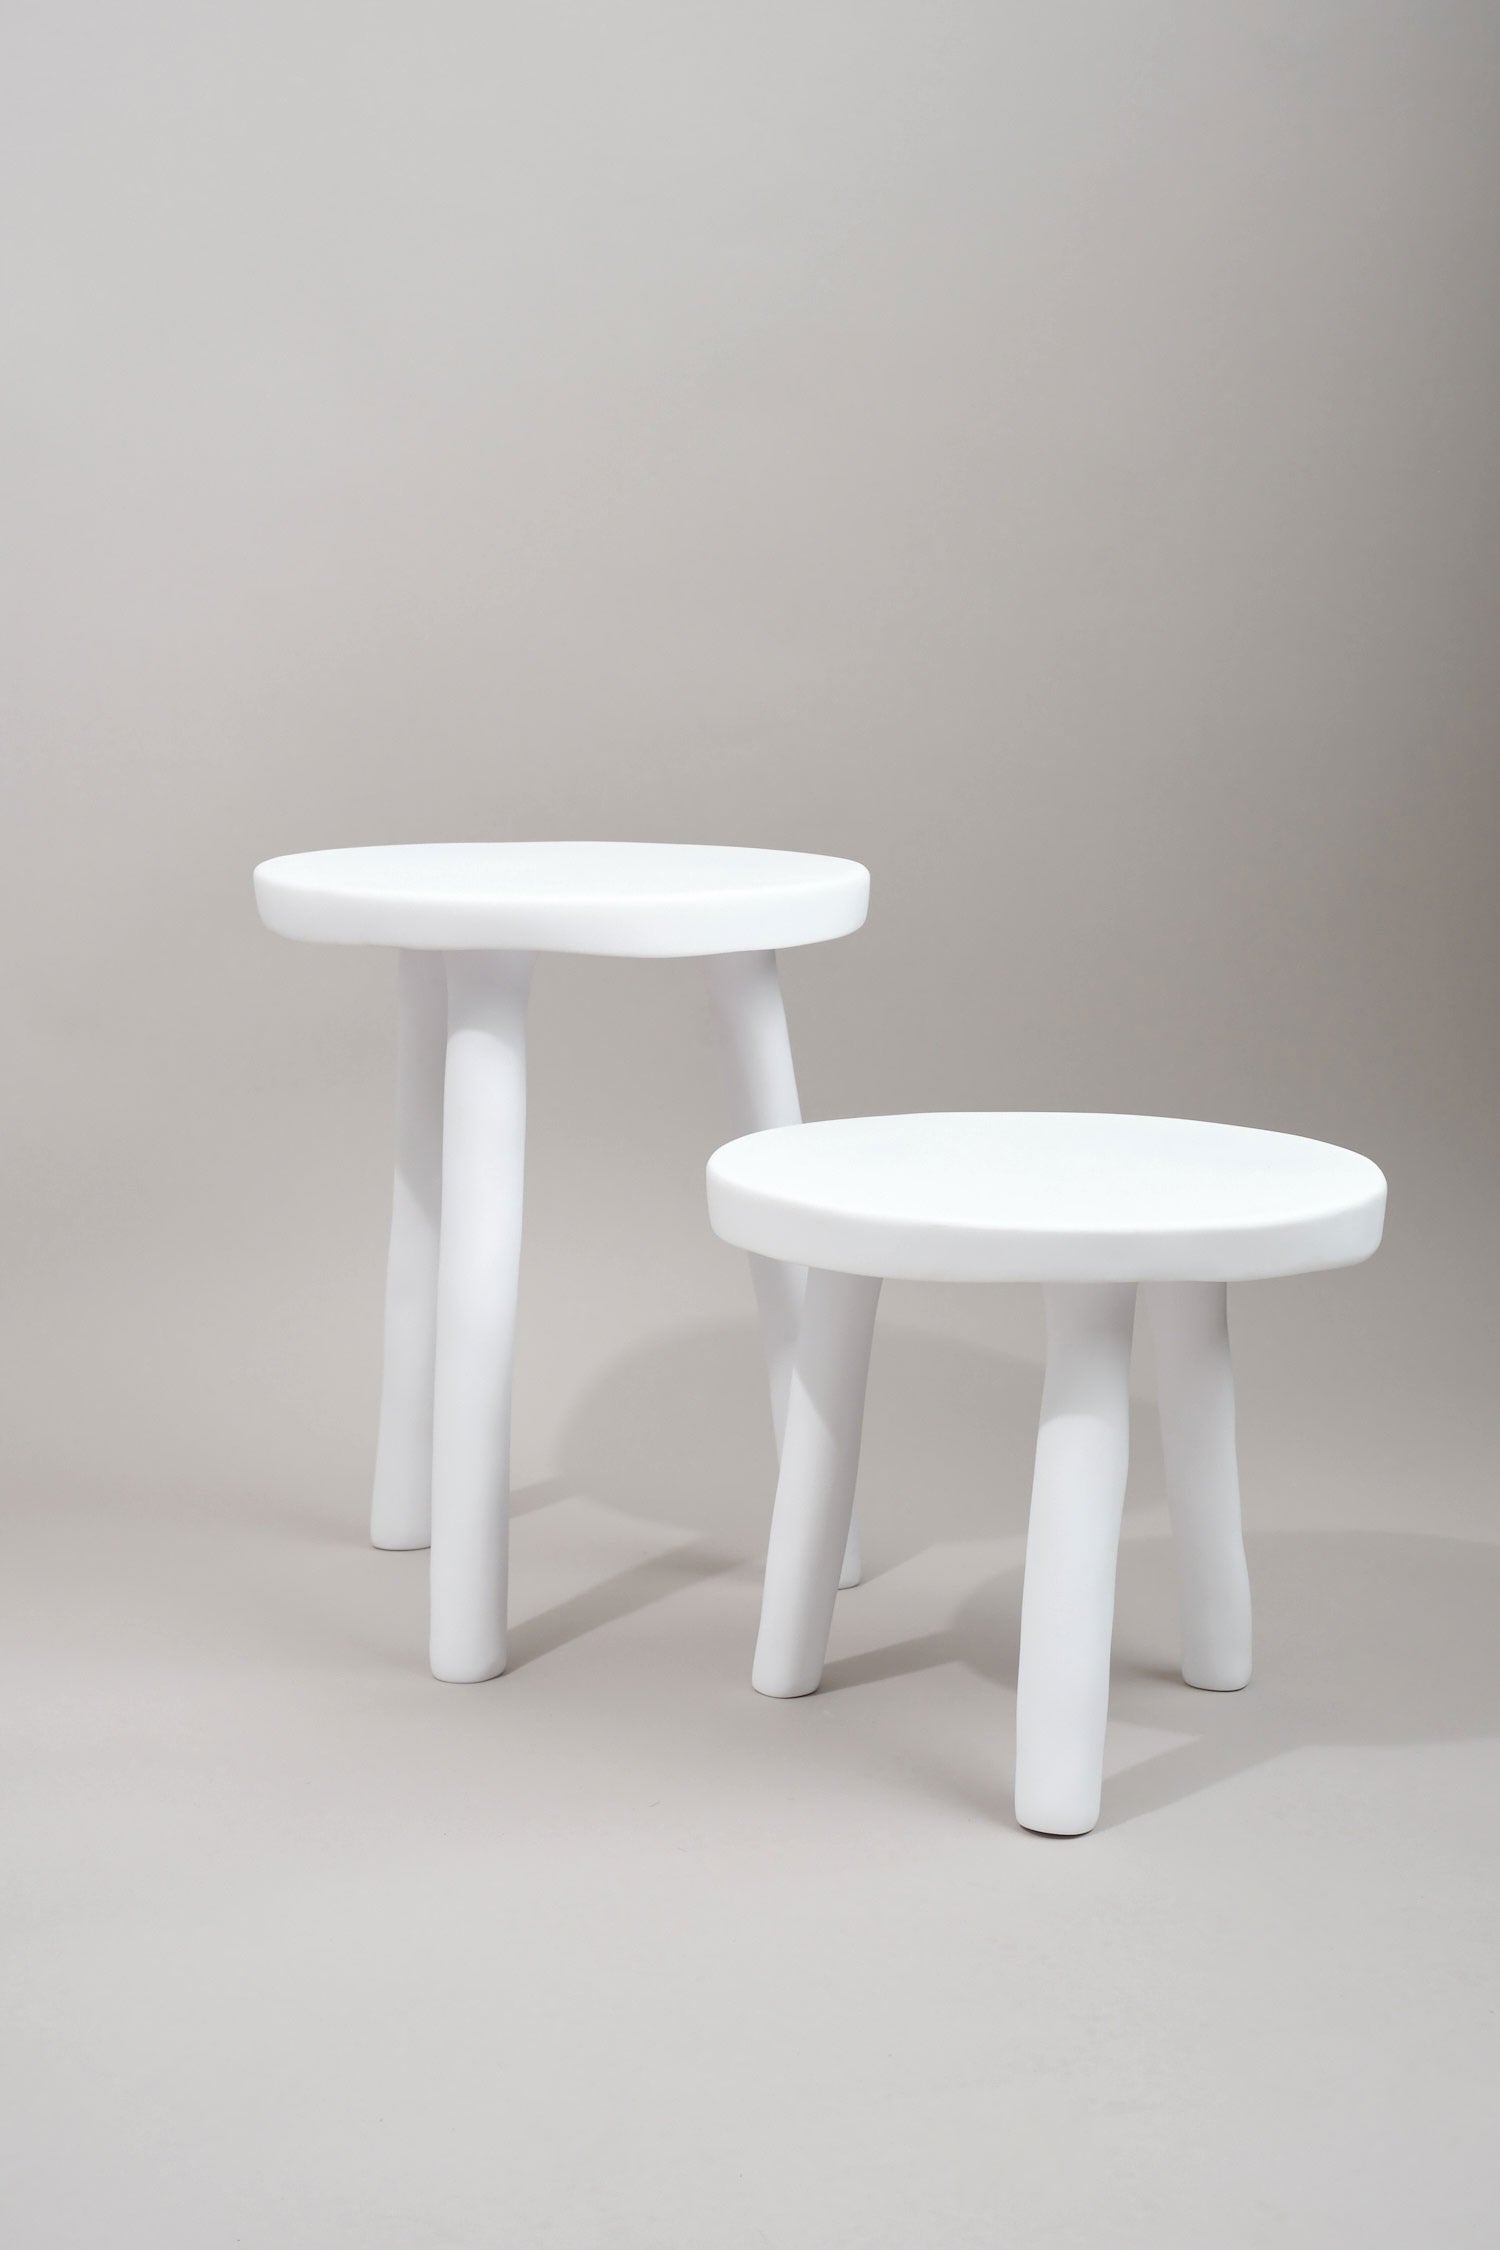 Tina Frey Designs small stool